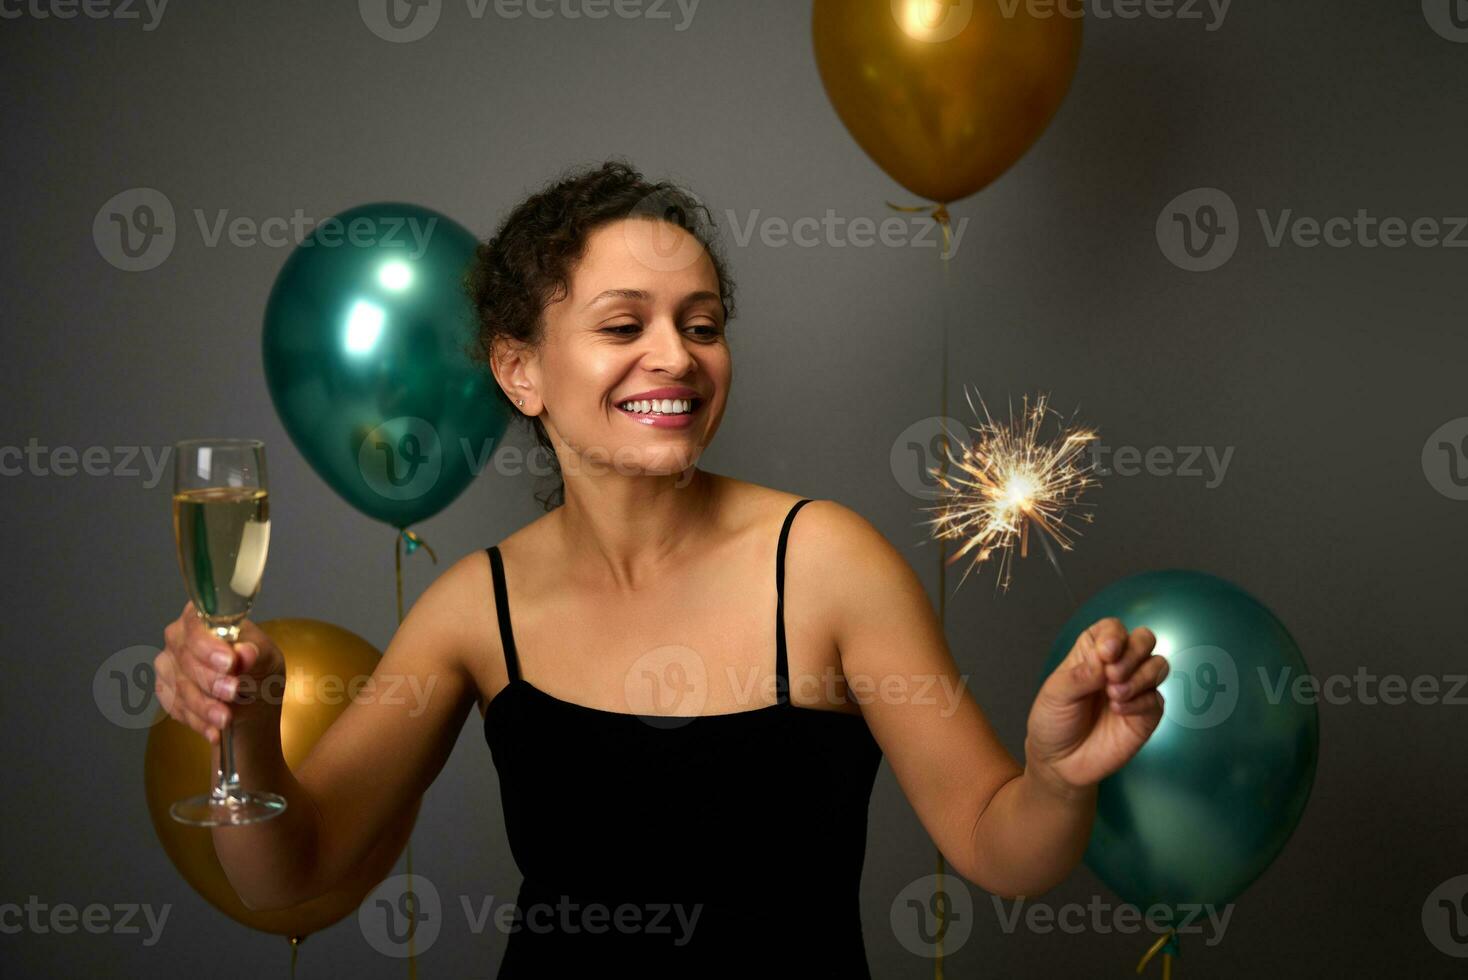 heiter Dame haben Spaß beim Jahrestag Party, Weihnachten, Neu Jahre Fall. schön Frau halten Glas von funkelnd Wein und Wunderkerzen, auf grau Hintergrund mit golden und Grün Luft Luftballons foto